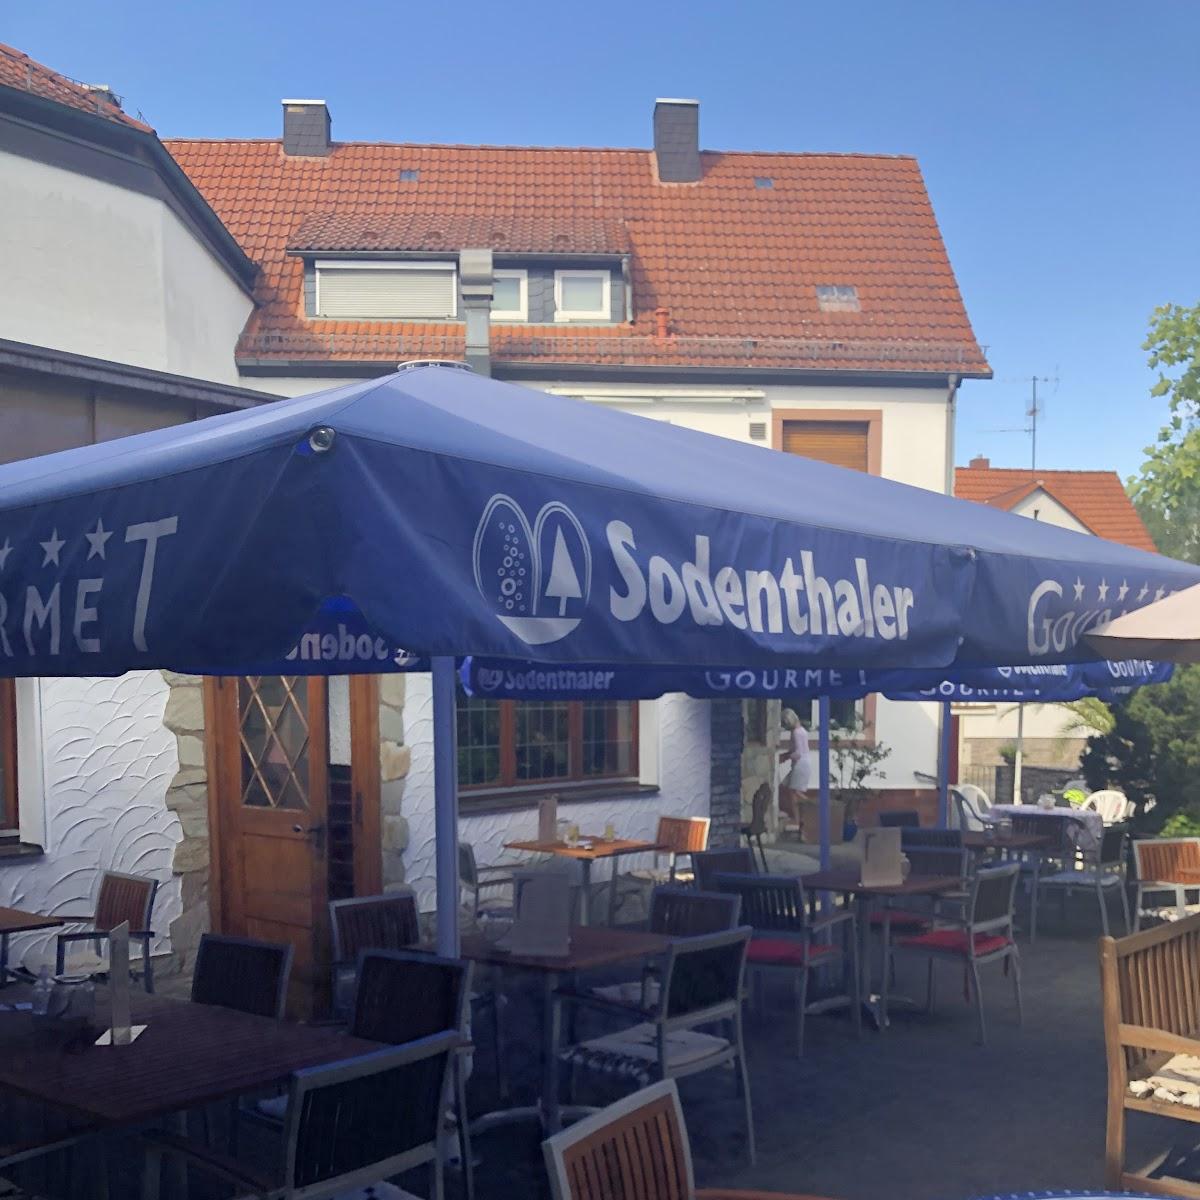 Restaurant "Altdeutsche Weinstube" in Aschaffenburg